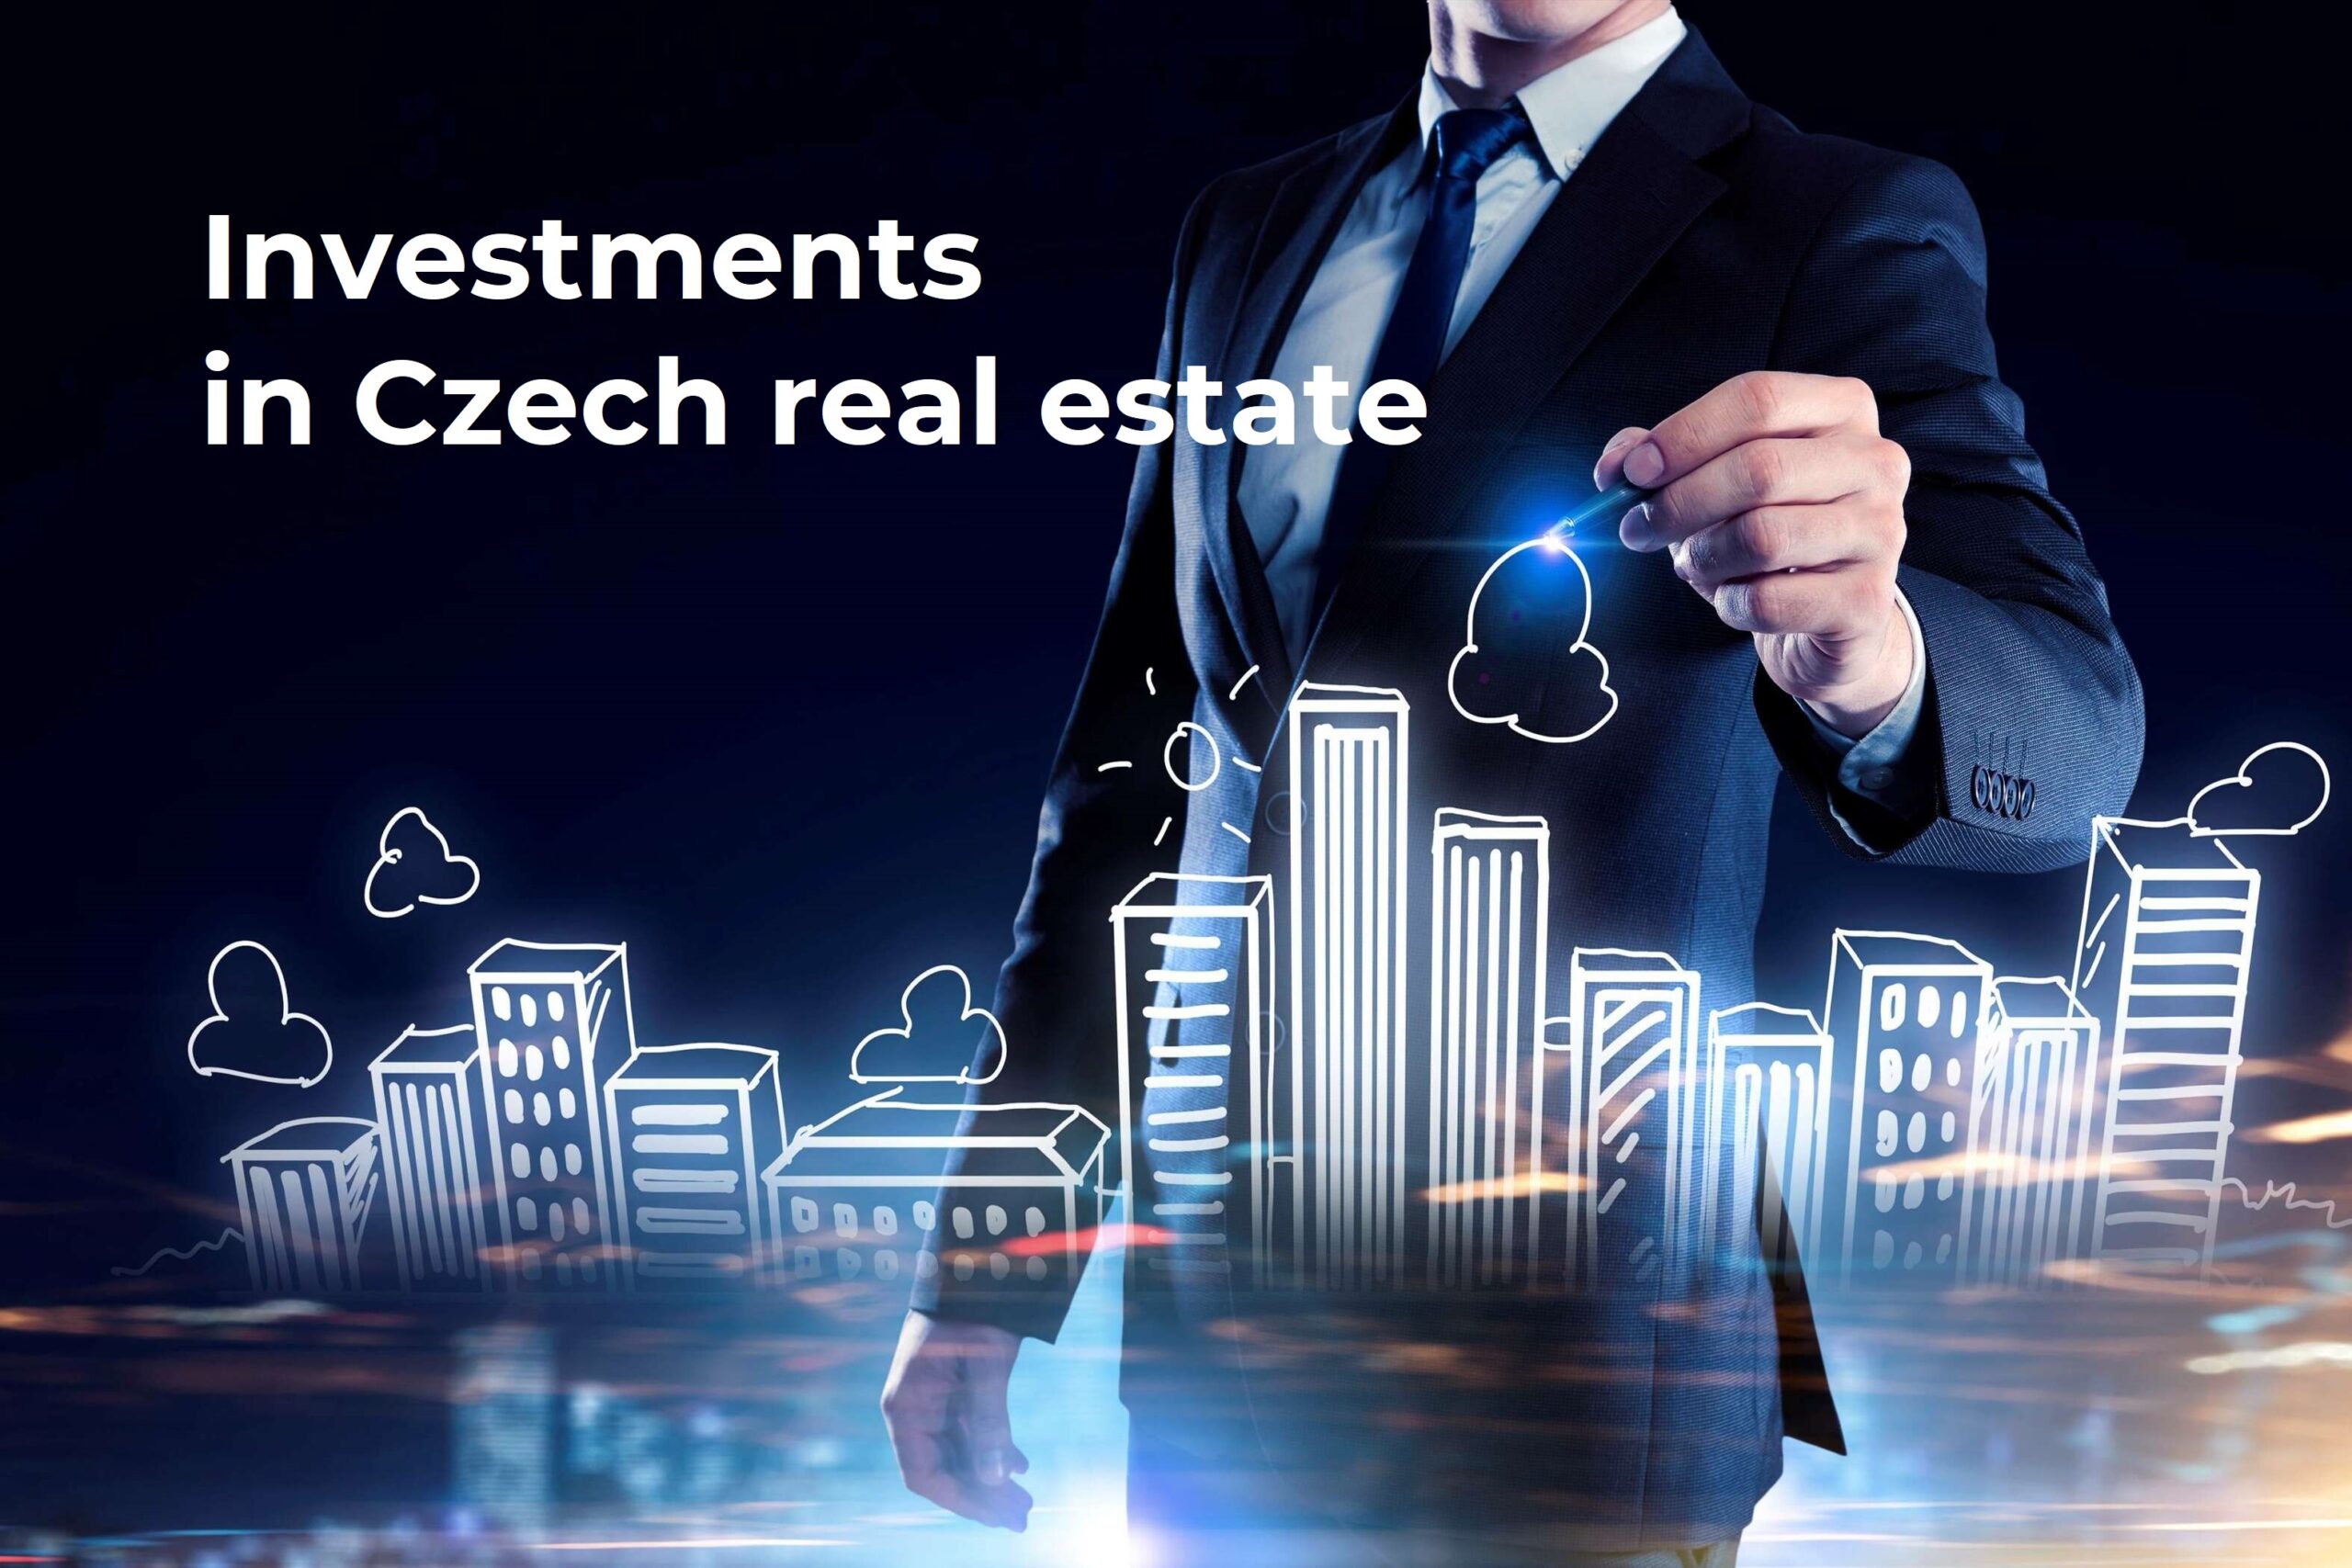 For sale es una empresa cuya actividad es la implementación de inversiones extranjeras en bienes raíces en los mercados checo y eslovaco